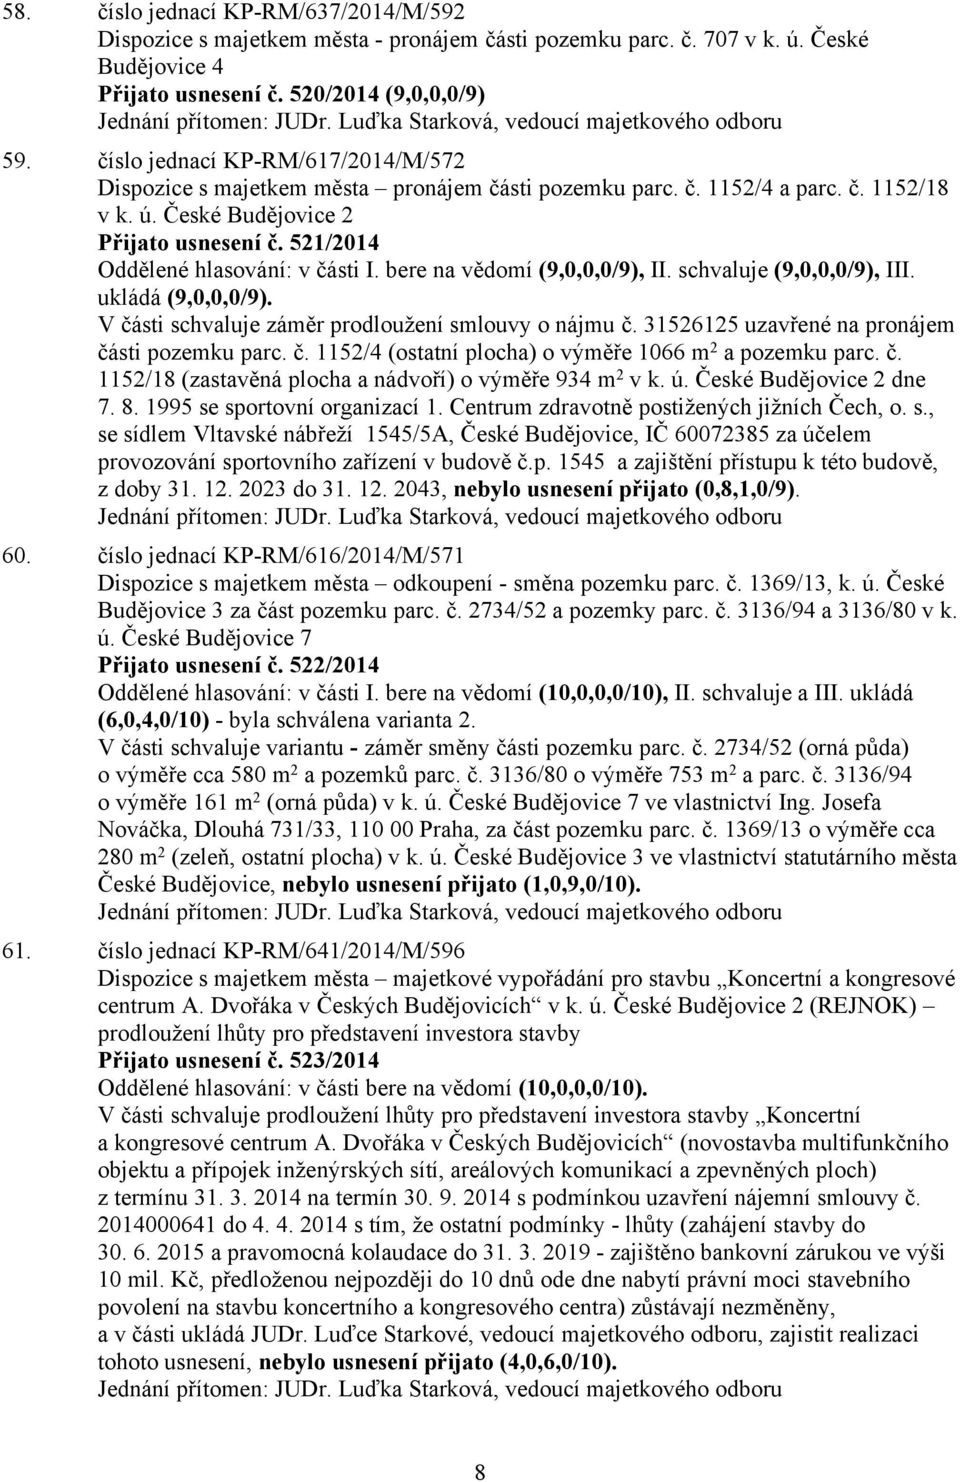 České Budějovice 2 Přijato usnesení č. 521/2014 Oddělené hlasování: v části (9,0,0,0/9), (9,0,0,0/9), III. ukládá (9,0,0,0/9). V části schvaluje záměr prodloužení smlouvy o nájmu č.